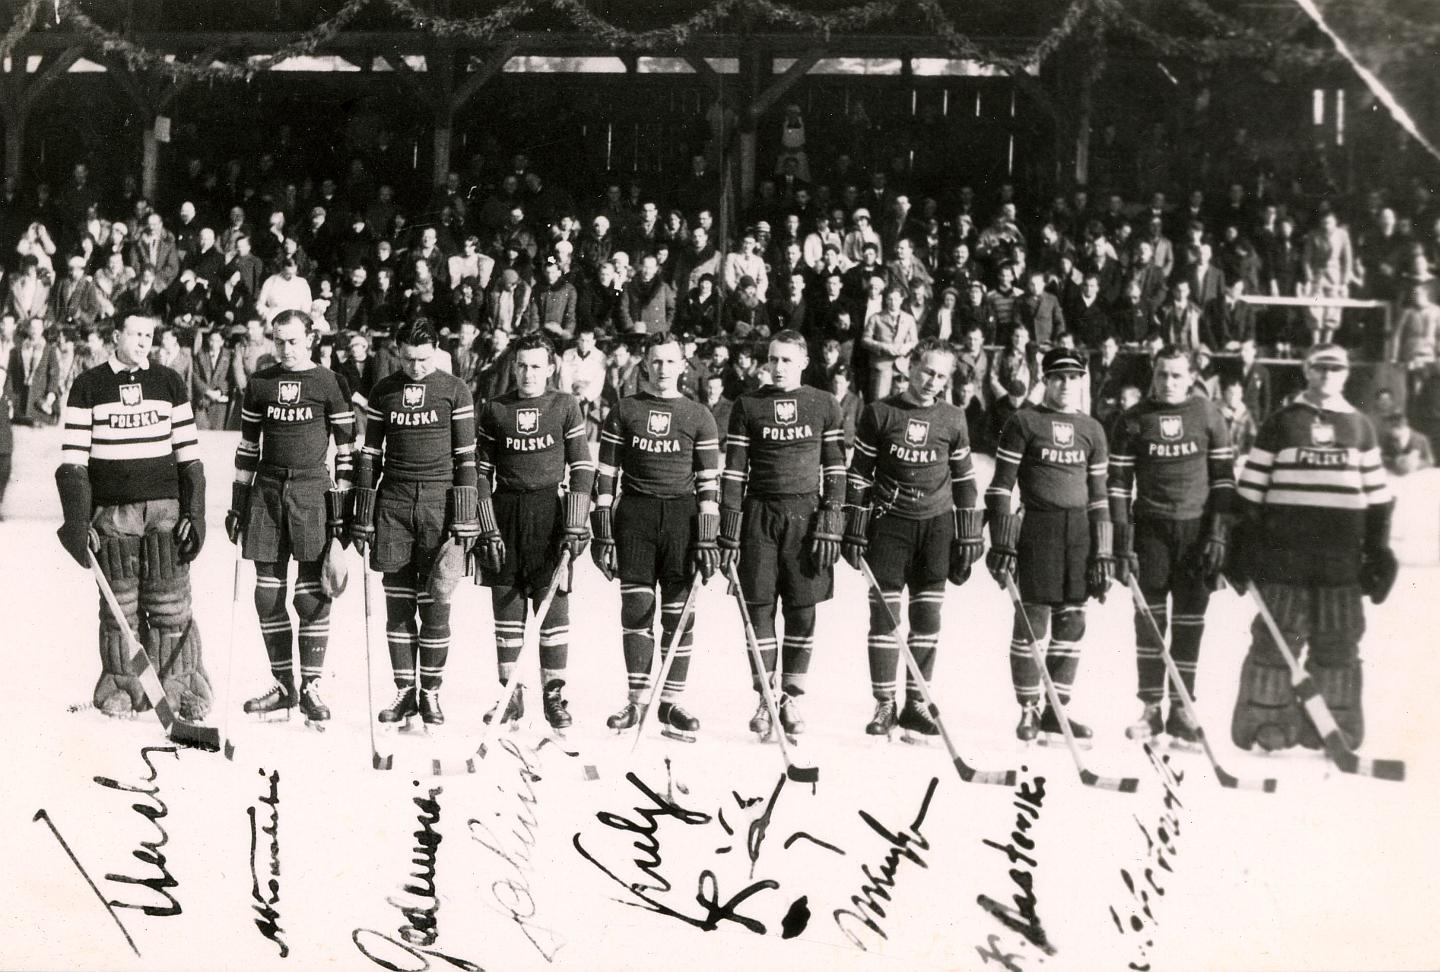 Mistrzostwa Świata i Europy w hokeju na lodzie, Krynica, 1931 r.